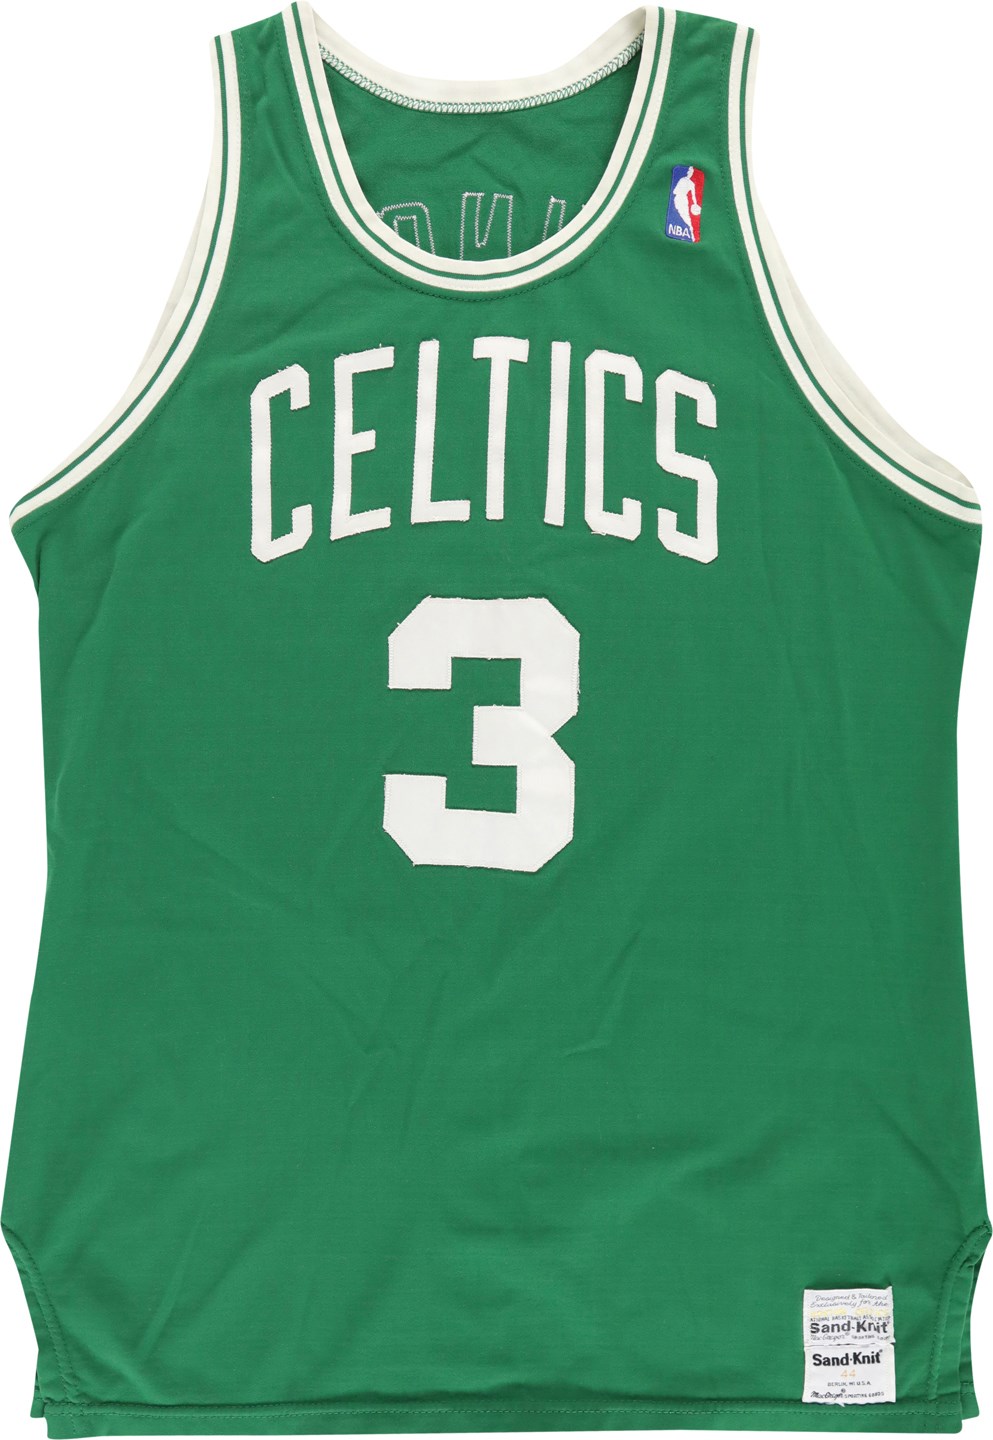 - 1986-87 Dennis Johnson Boston Celtics Game Worn Jersey